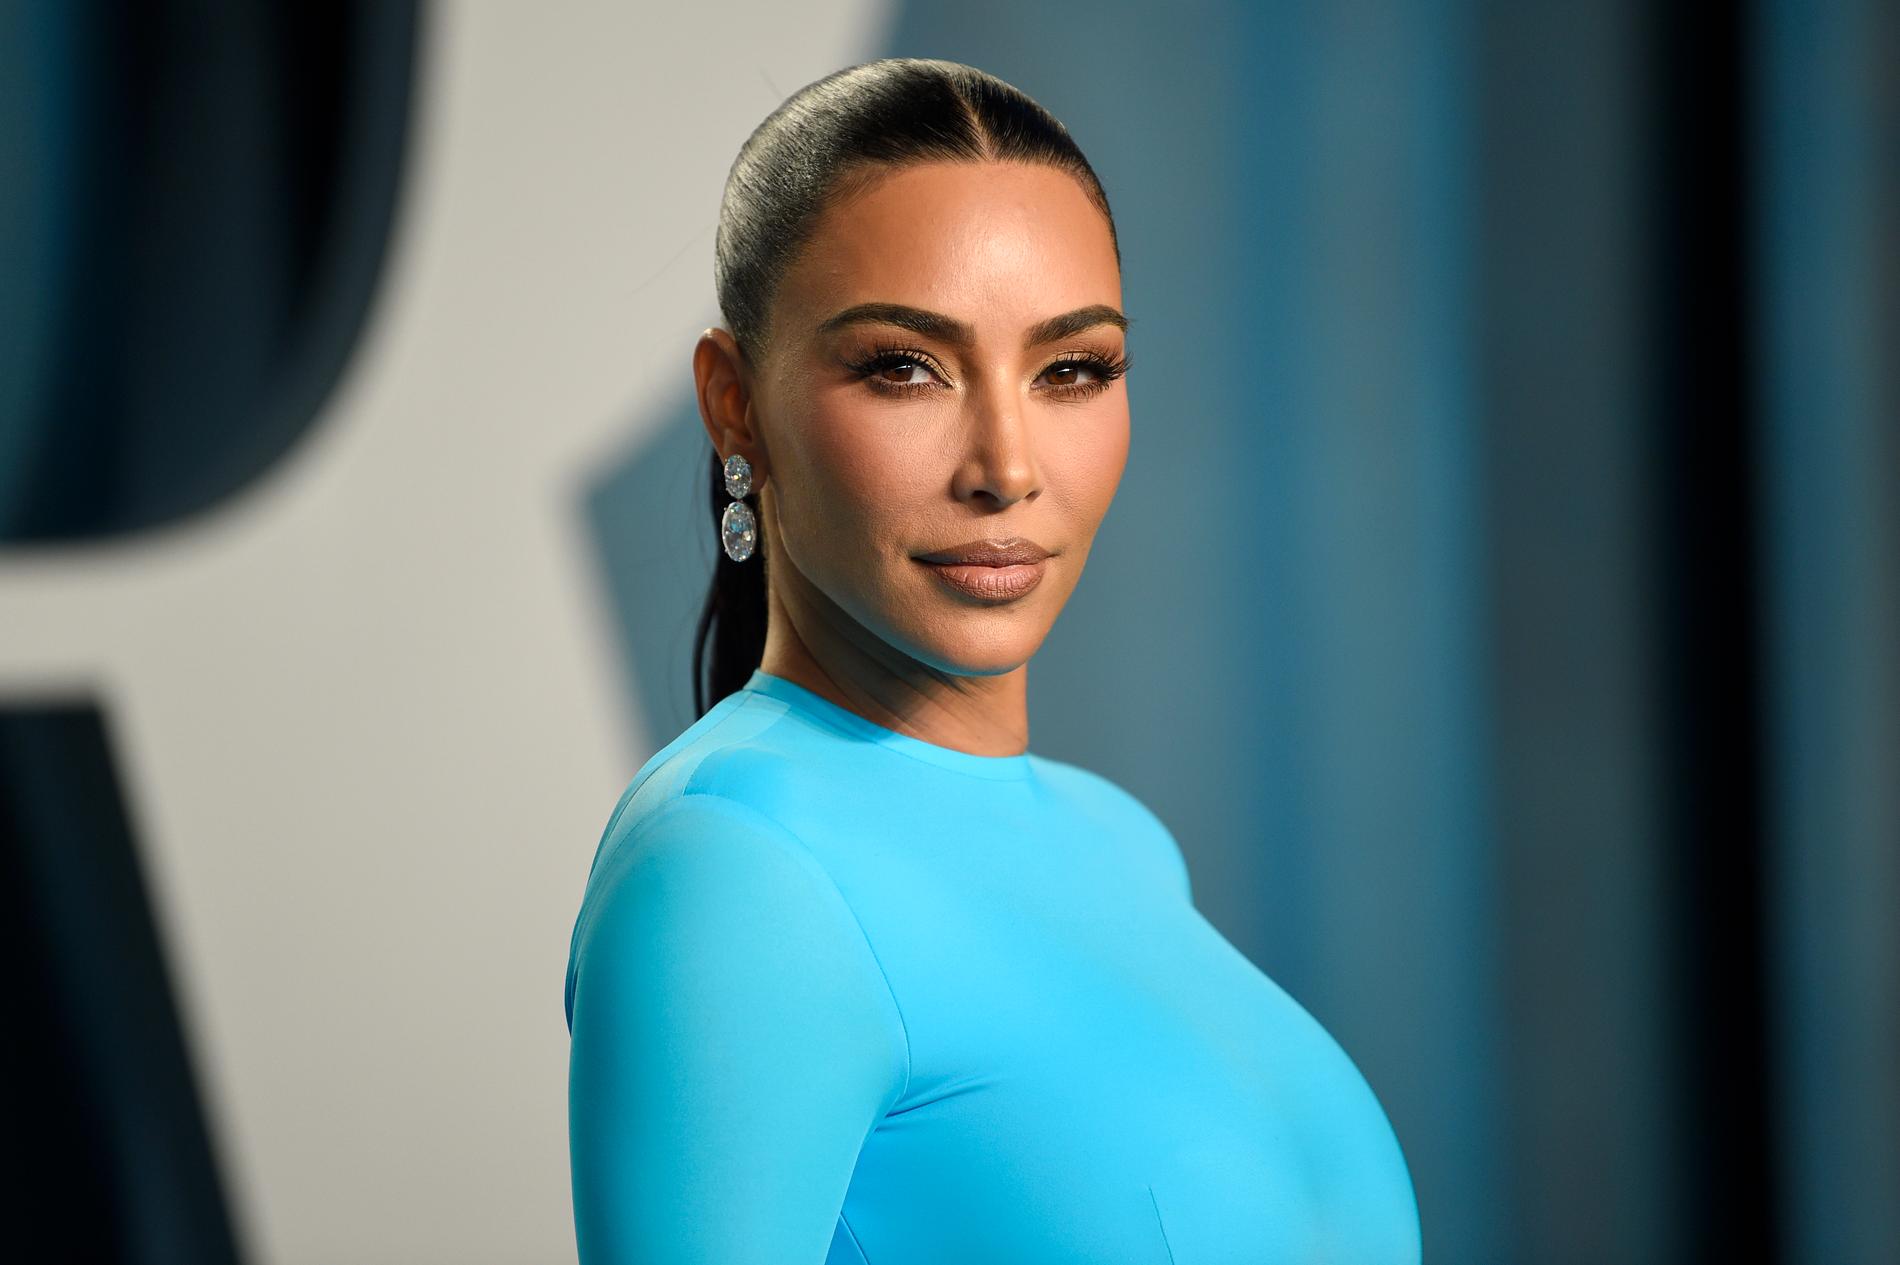 Kryptosmällen gör att Kim Kardashian måste betala 14 miljoner kronor. Arkivbild.